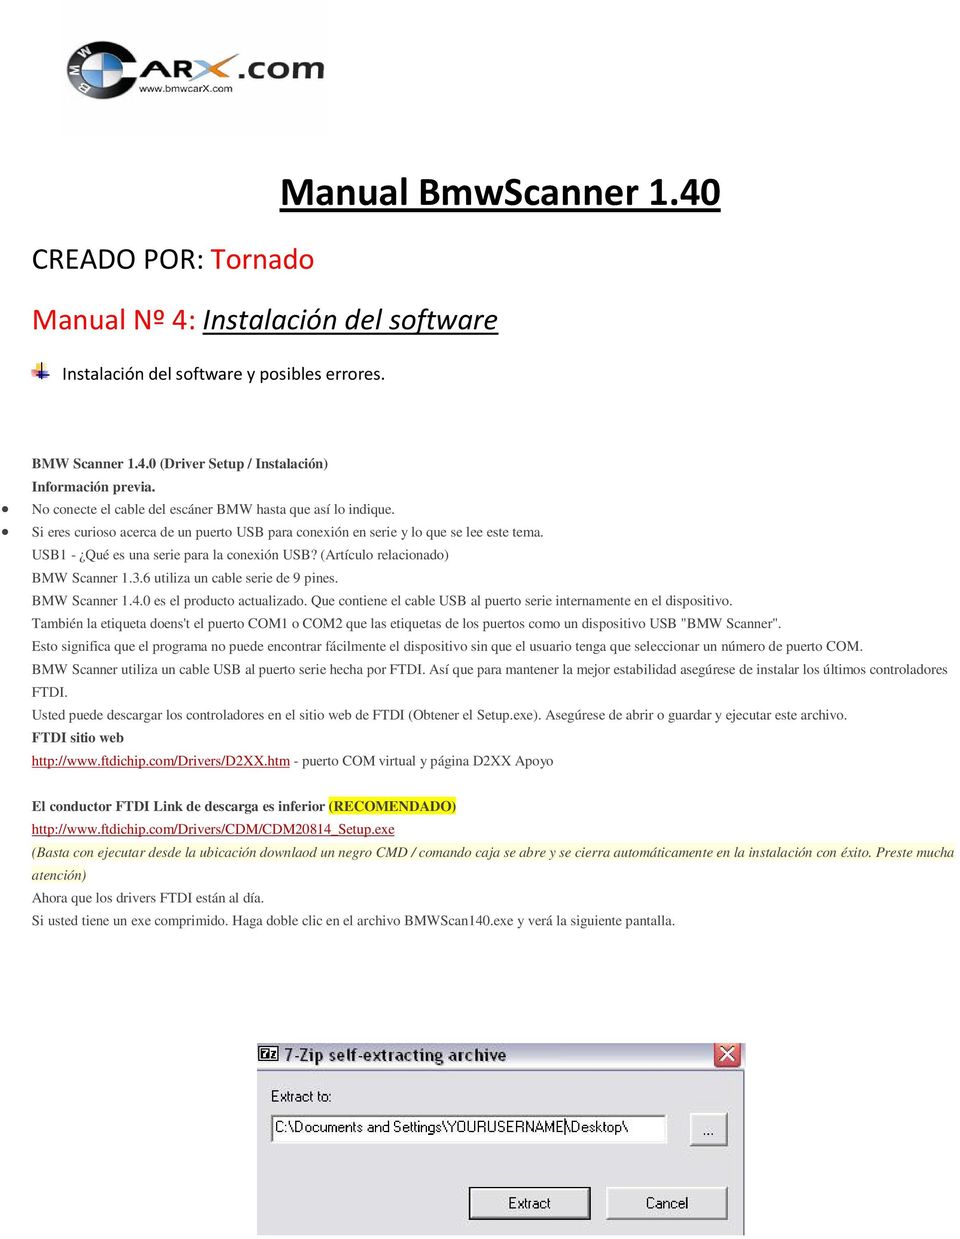 (Artículo relacionado) BMW Scanner 1.3.6 utiliza un cable serie de 9 pines. BMW Scanner 1.4.0 es el producto actualizado. Que contiene el cable USB al puerto serie internamente en el dispositivo.